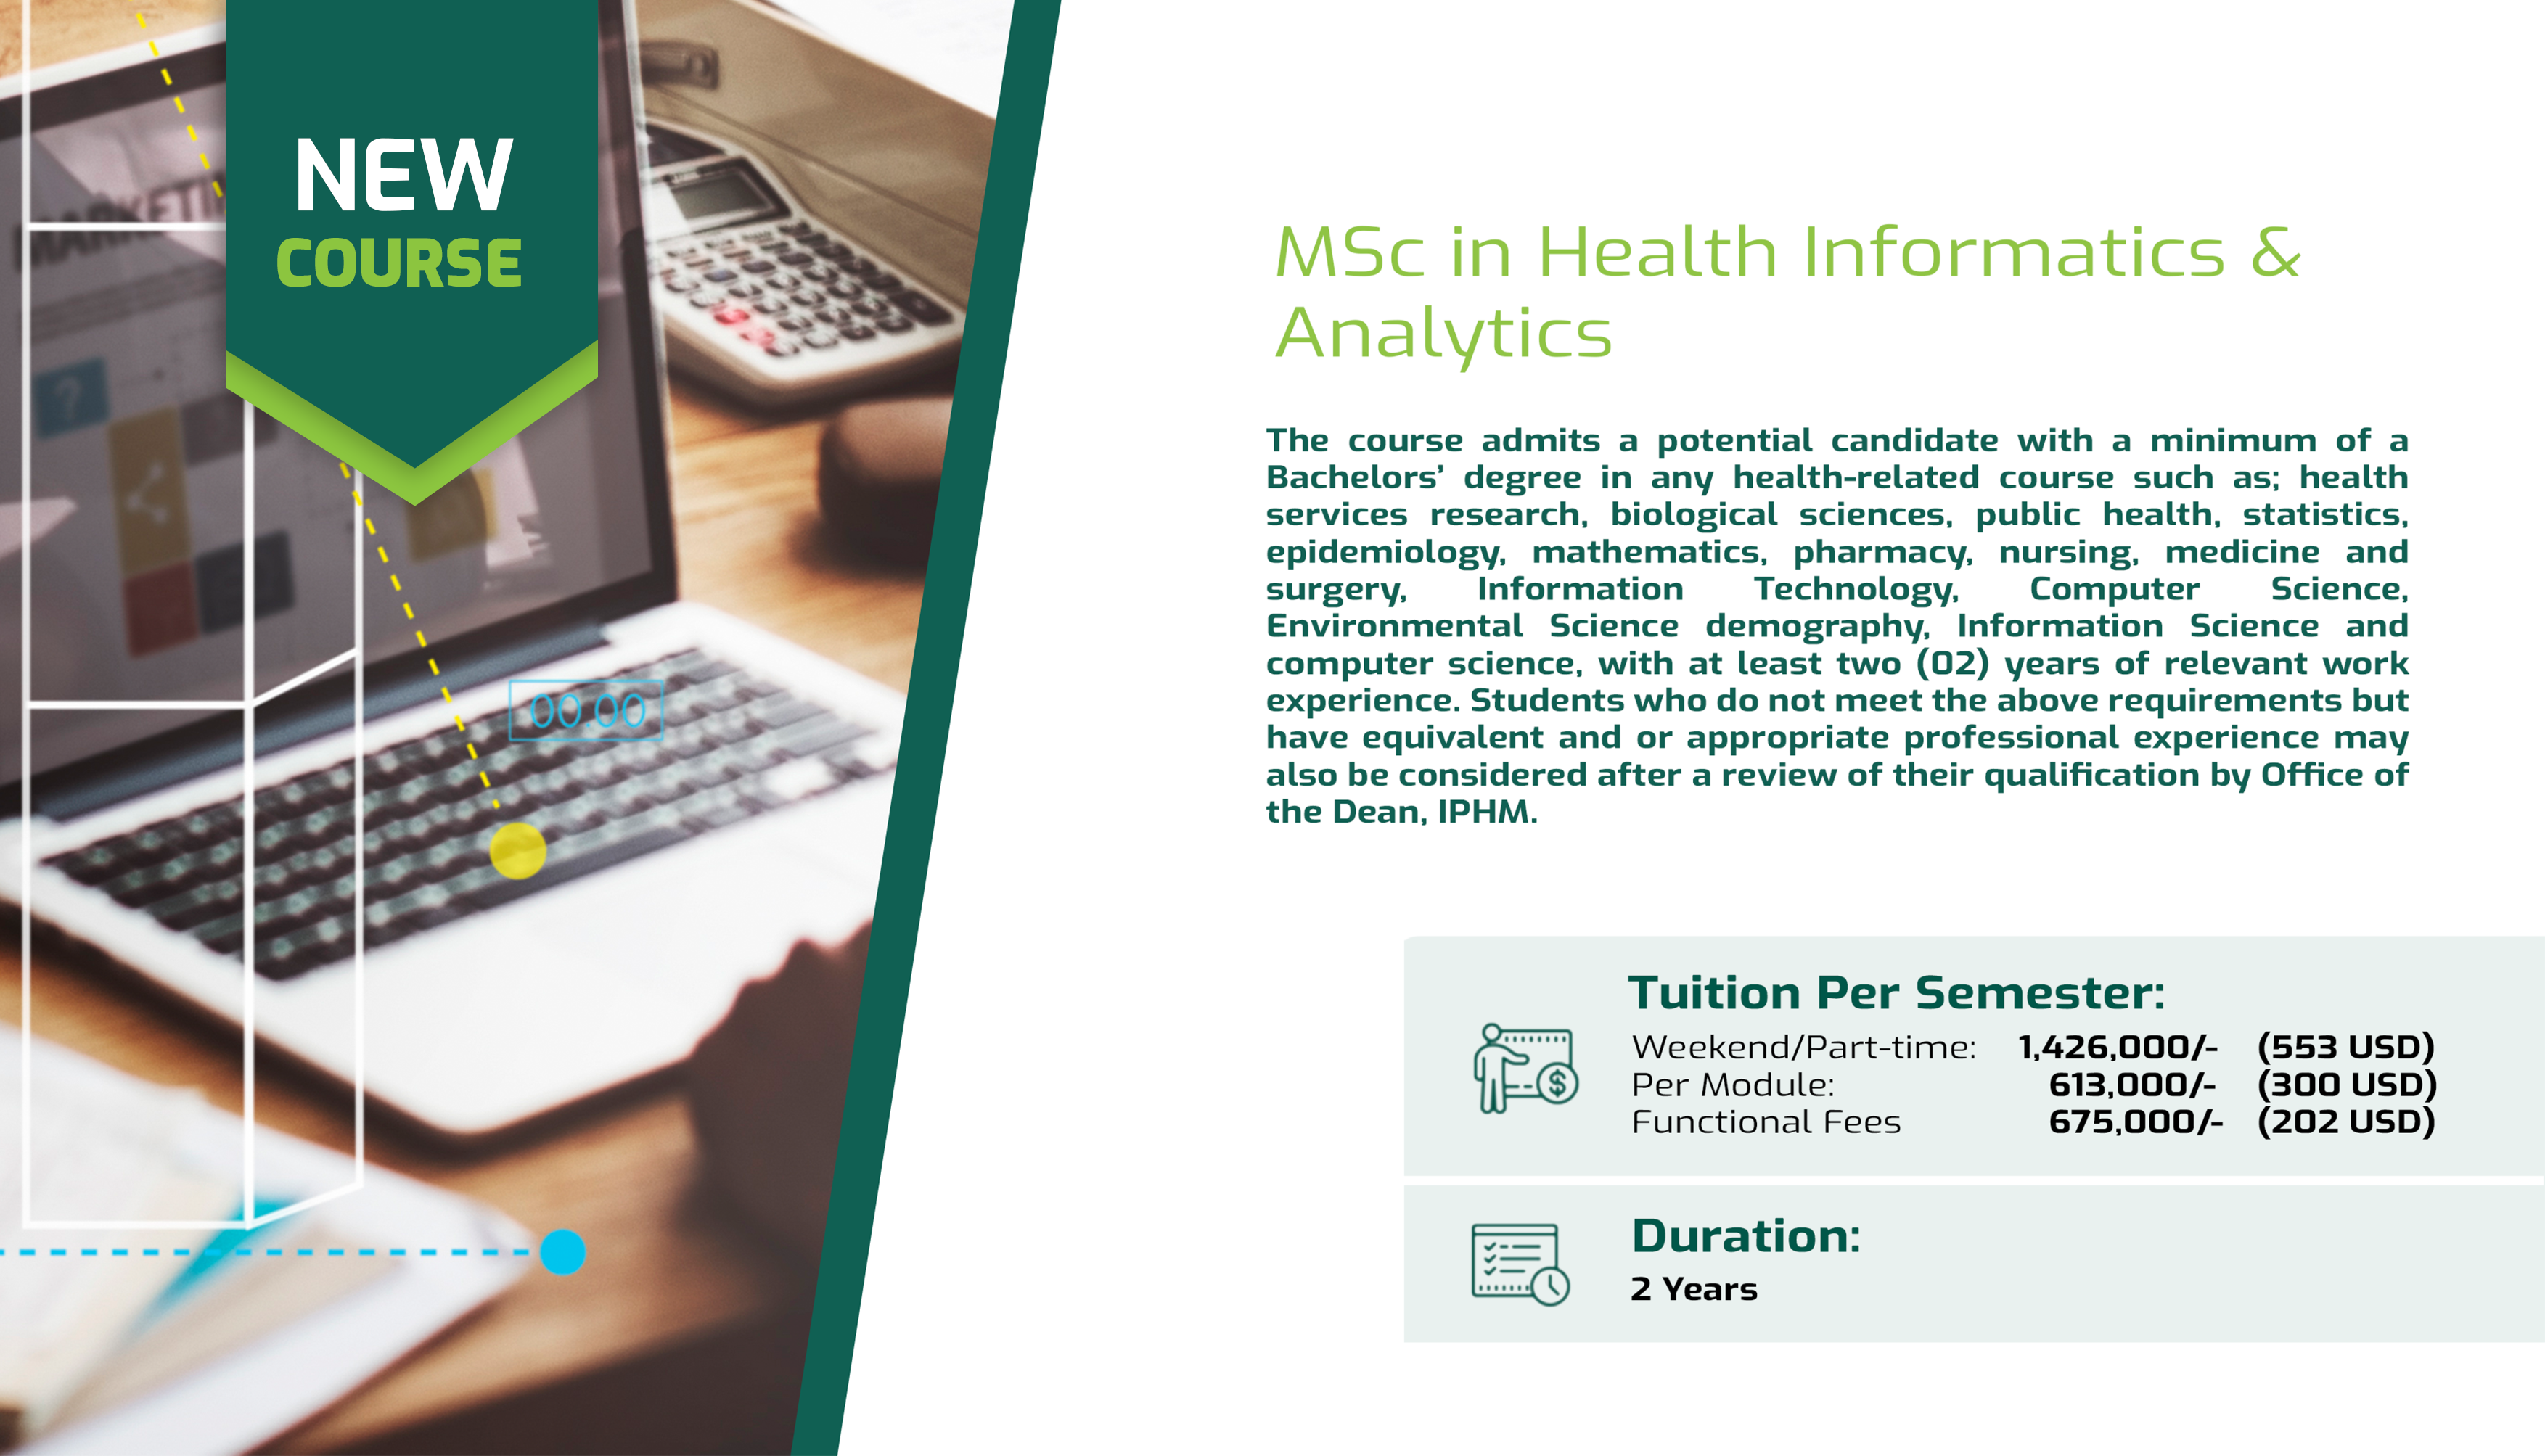 MSc in Health Informatics & Analytics